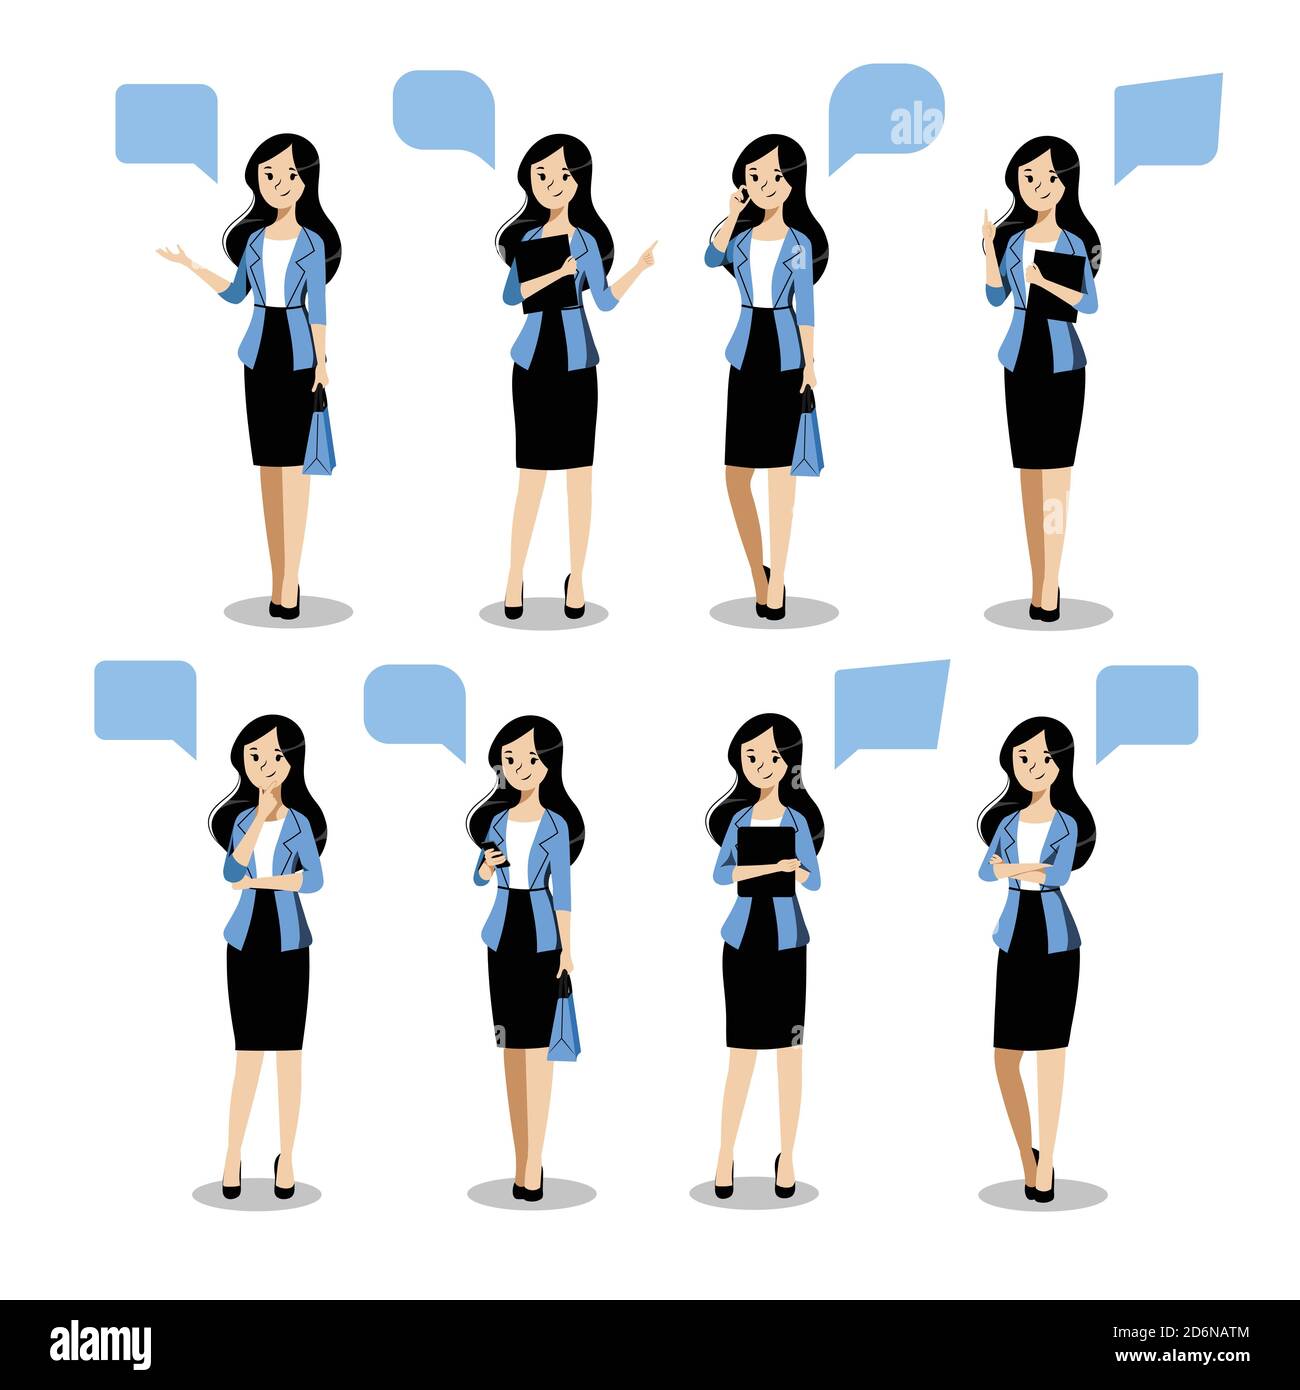 Jeune femme d'affaires se pose dans différentes poses, sur fond blanc. Illustration vectorielle plate. Personnage de dessin animé femelle dans blazer bleu et jupe noire, i Illustration de Vecteur